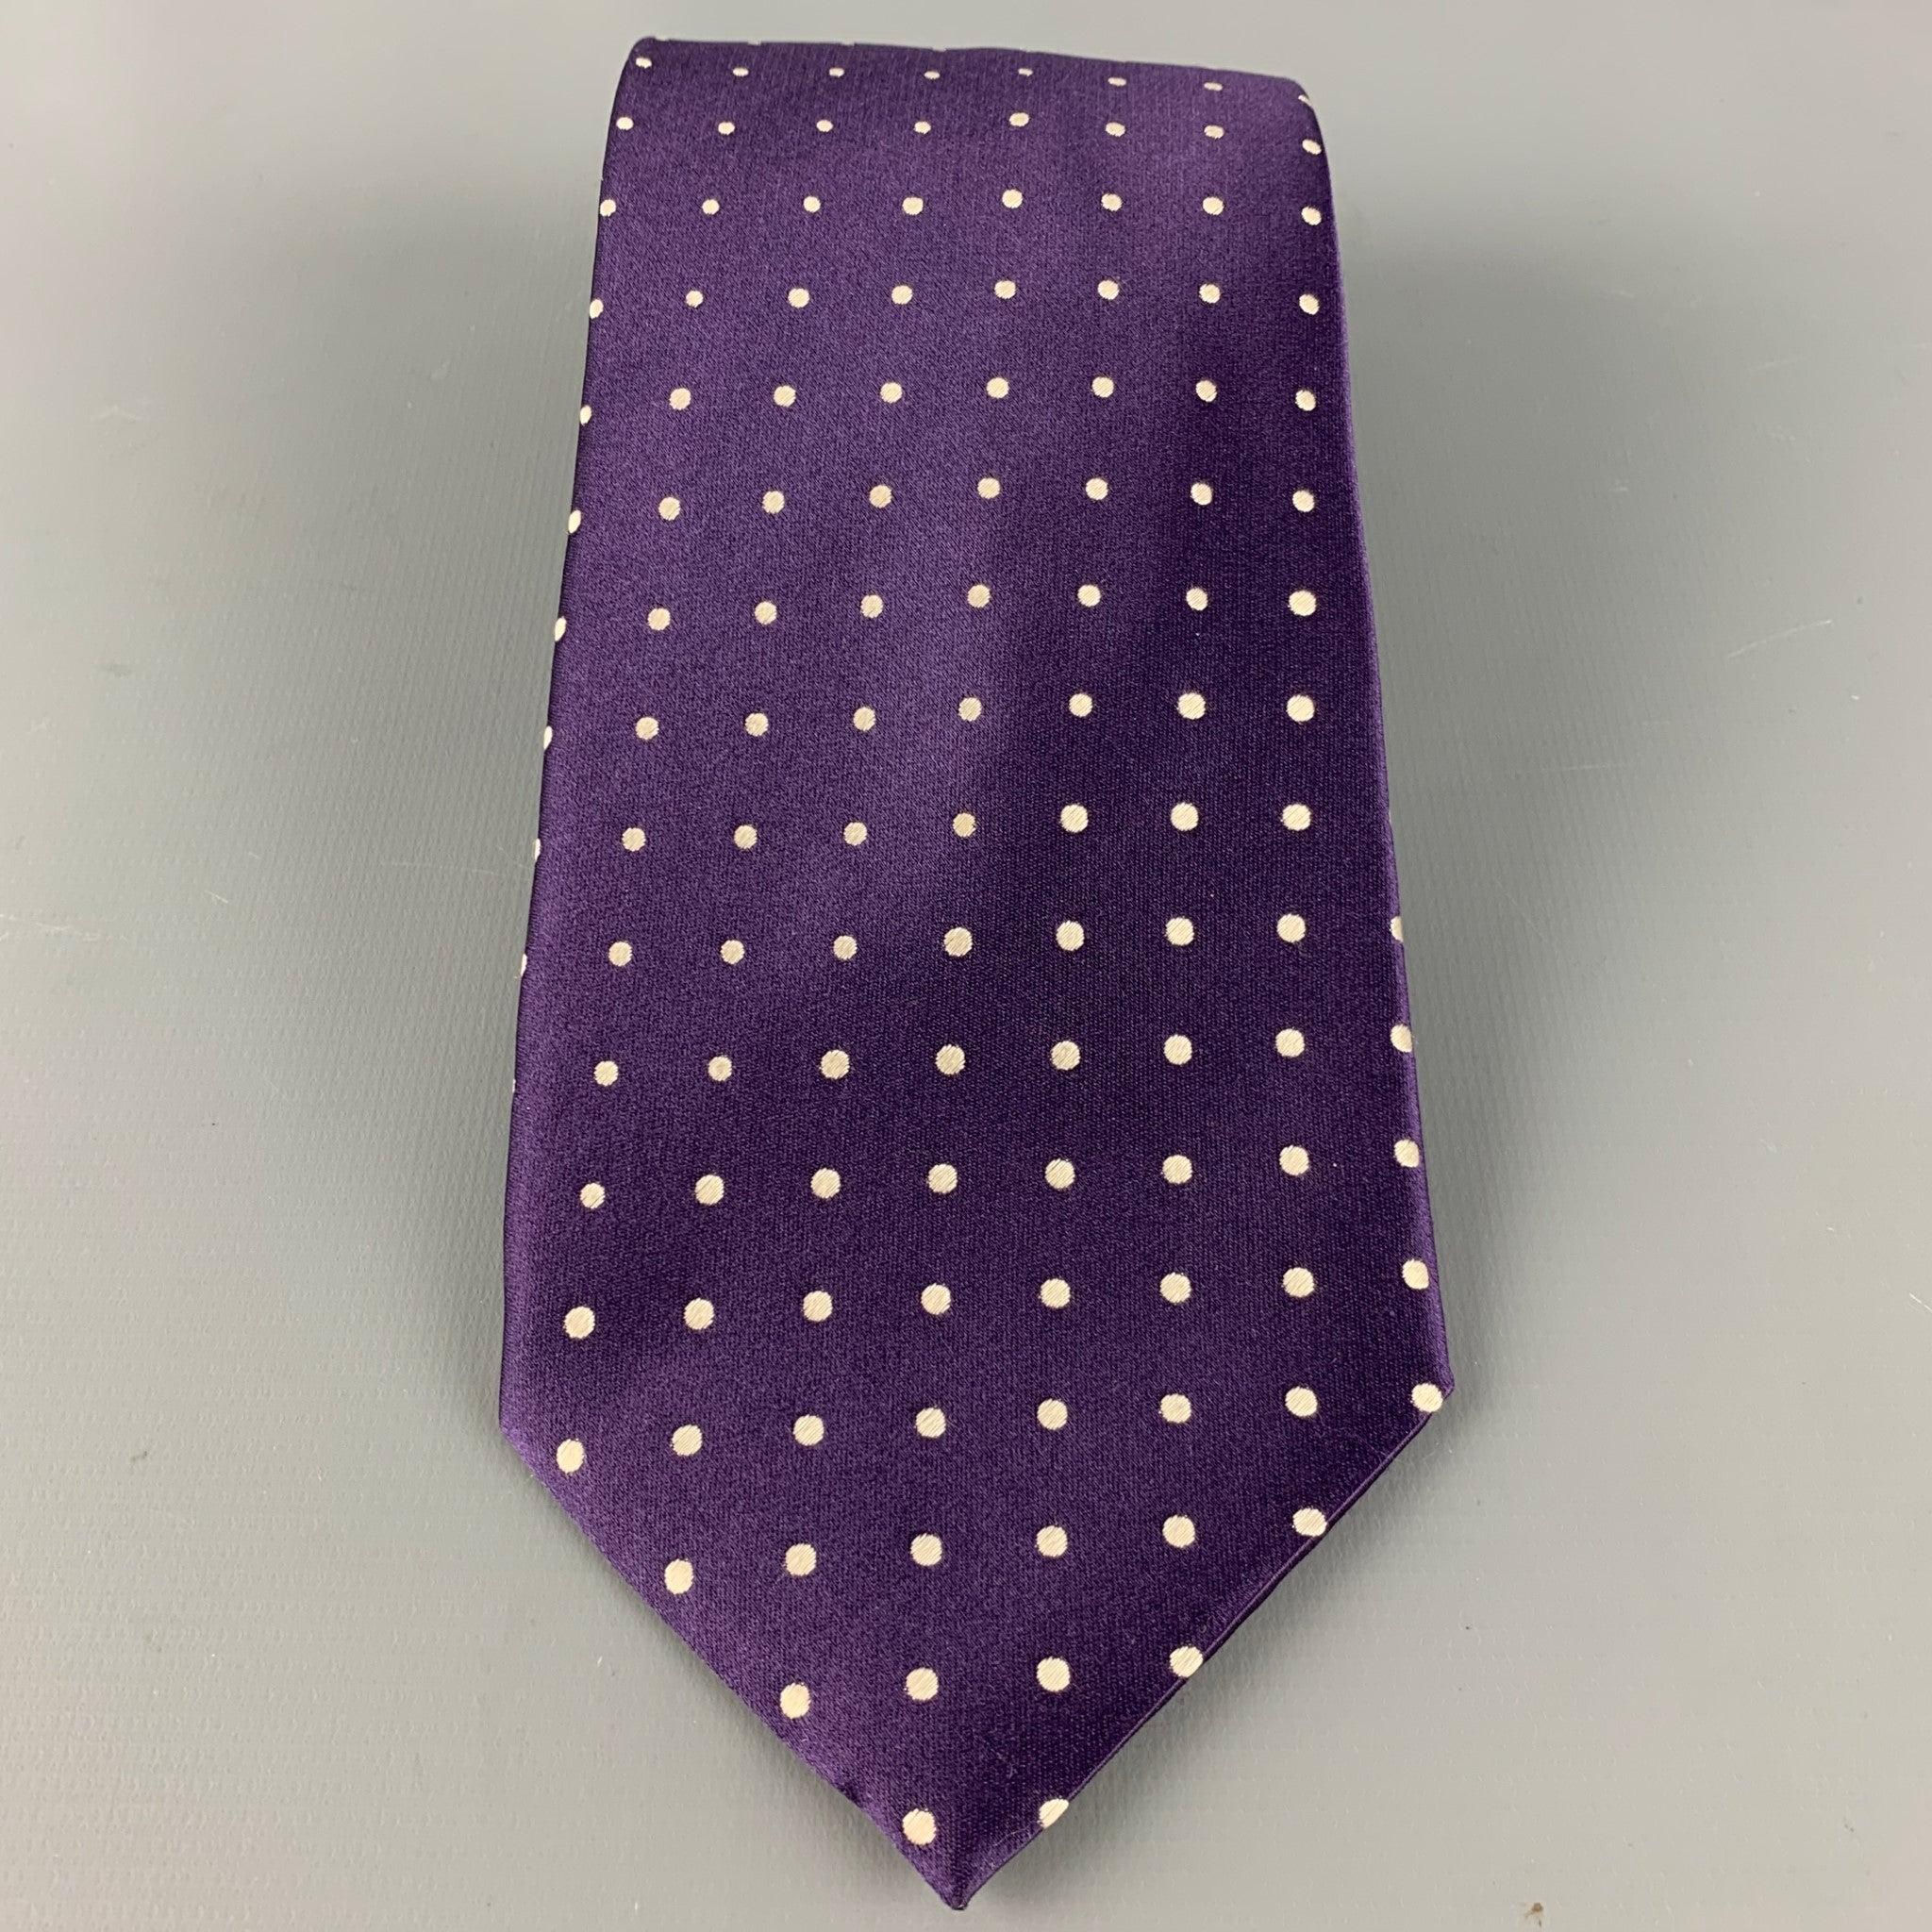 GIORGIO ARMANI Krawatte aus lilafarbenem Seidensatin mit weißem Tupfenmuster. Handgefertigt in Italien, sehr guter gebrauchter Zustand. 

Abmessungen: 
  Breite: 4 Zoll Länge: 62 Zoll 
  
  
 
Sui Generis-Referenz: 126584
Kategorie: Krawatte
Mehr